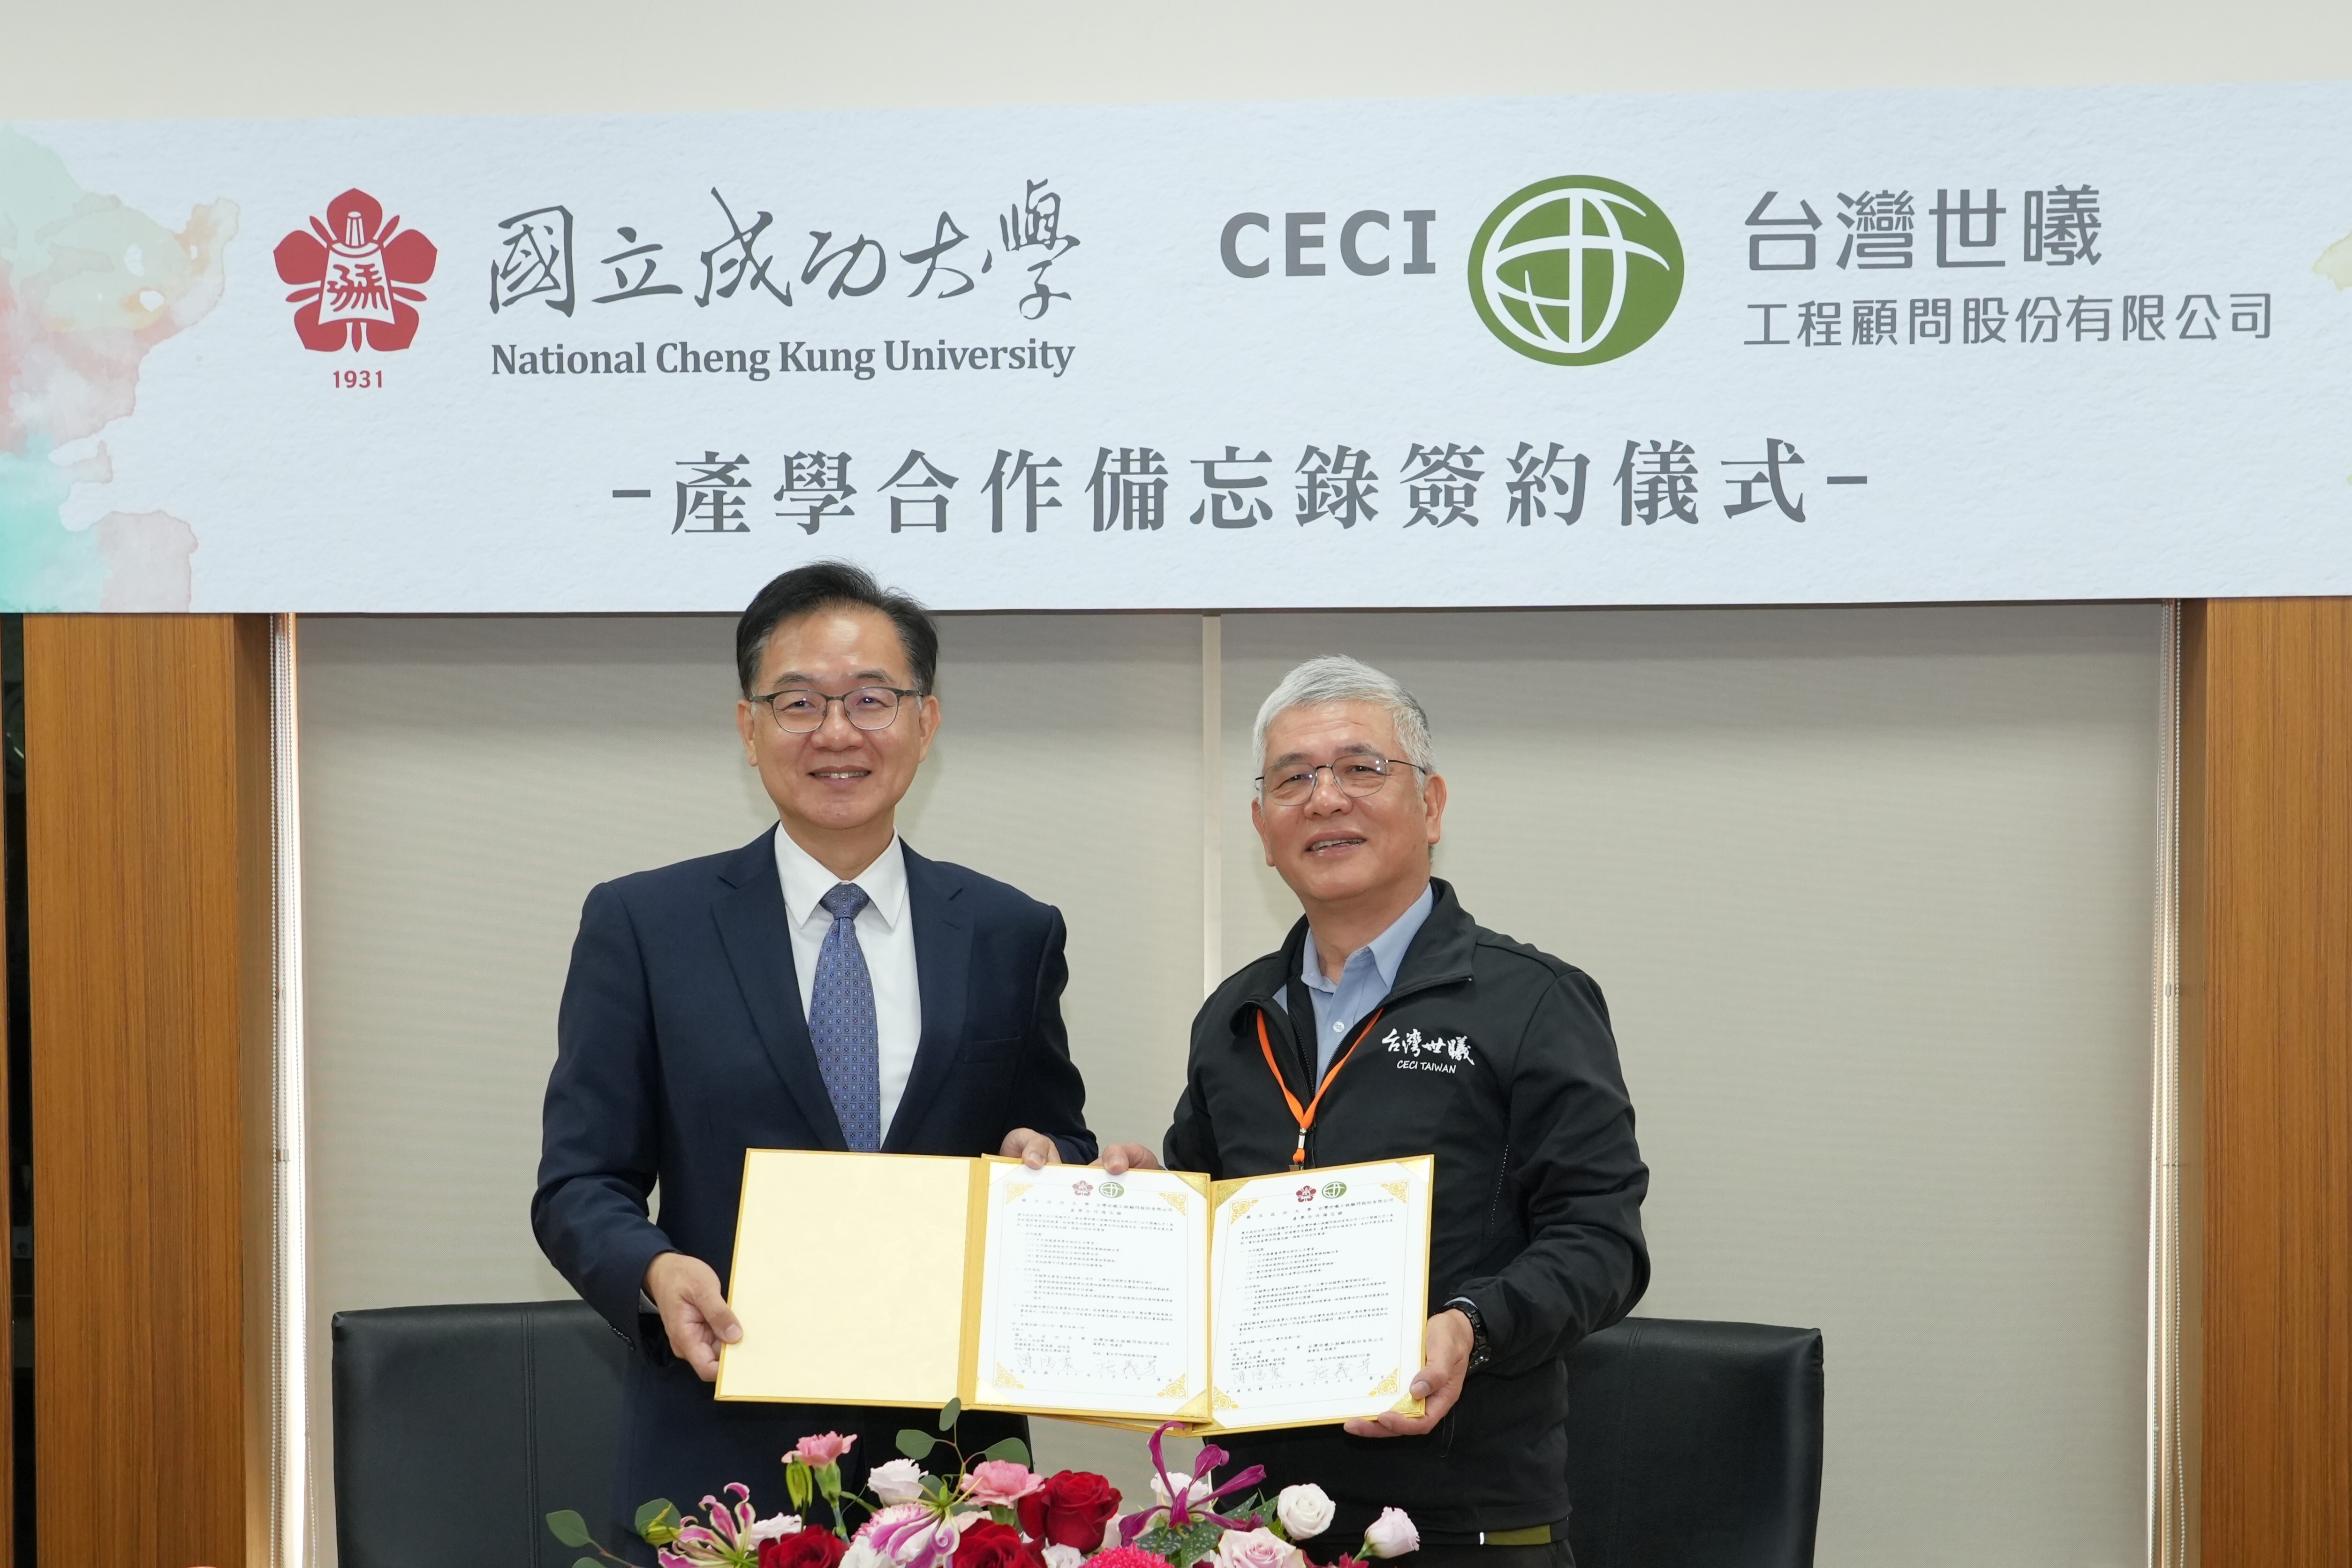 合作簽約儀式由成大副校長陳鴻震(圖左)與台灣世曦施義芳董事長(圖左)作為雙方代表出席並簽署